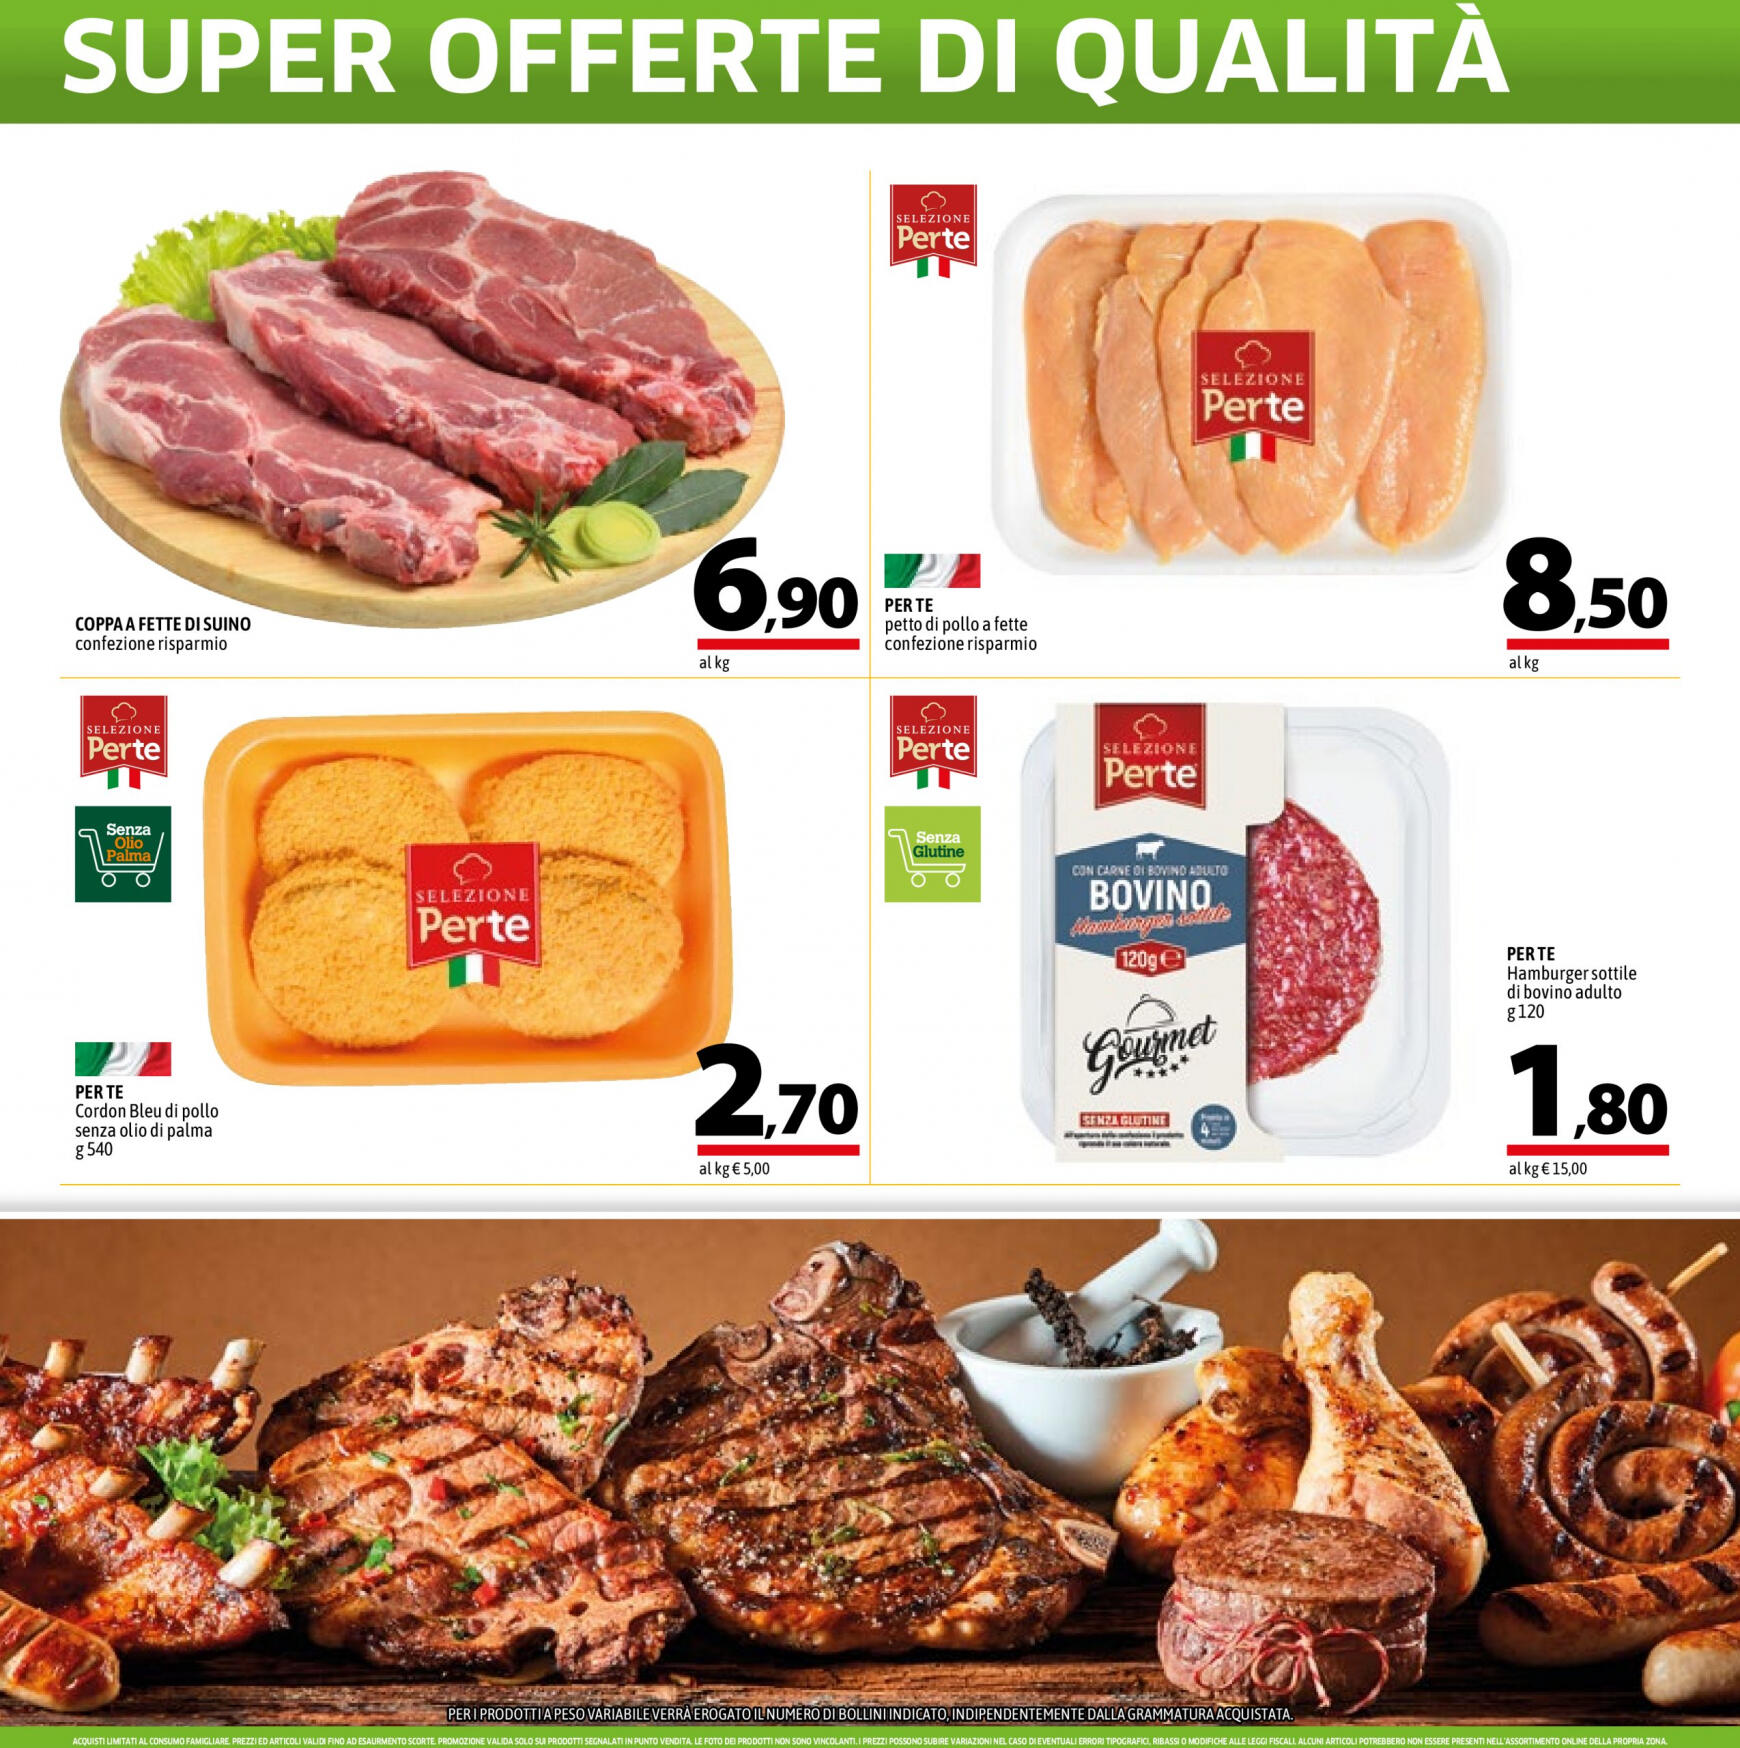 a-o - Nuovo volantino A&O - Super Offerte Di Qualita' 02.05. - 15.05. - page: 2